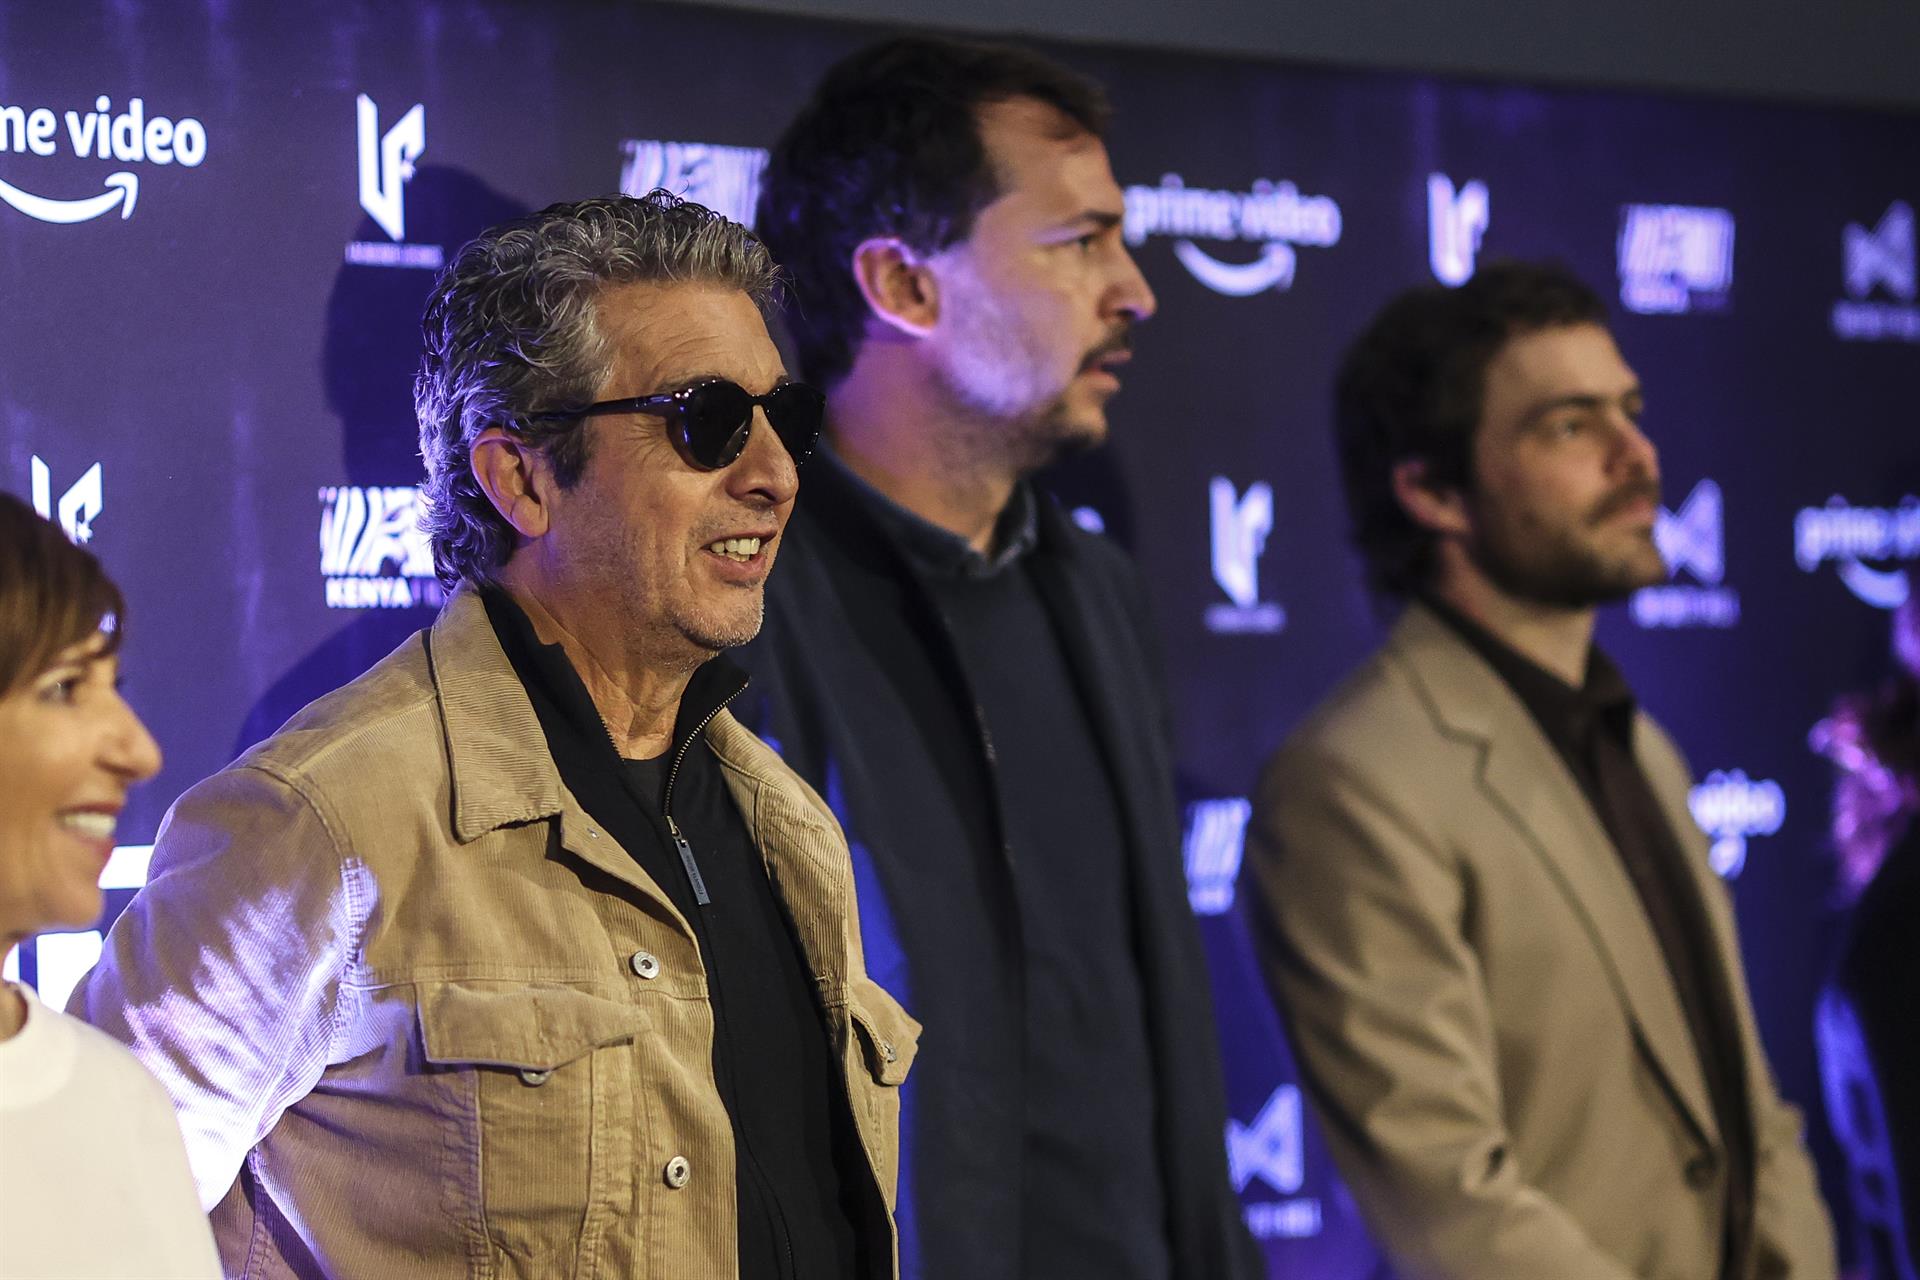 El actor Ricardo Darín (i) participa durante una rueda de prensa en la presentación de la película "Argentina 1985" hoy en Buenos Aires (Argentina). EFE/Juan Ignacio Roncoroni
